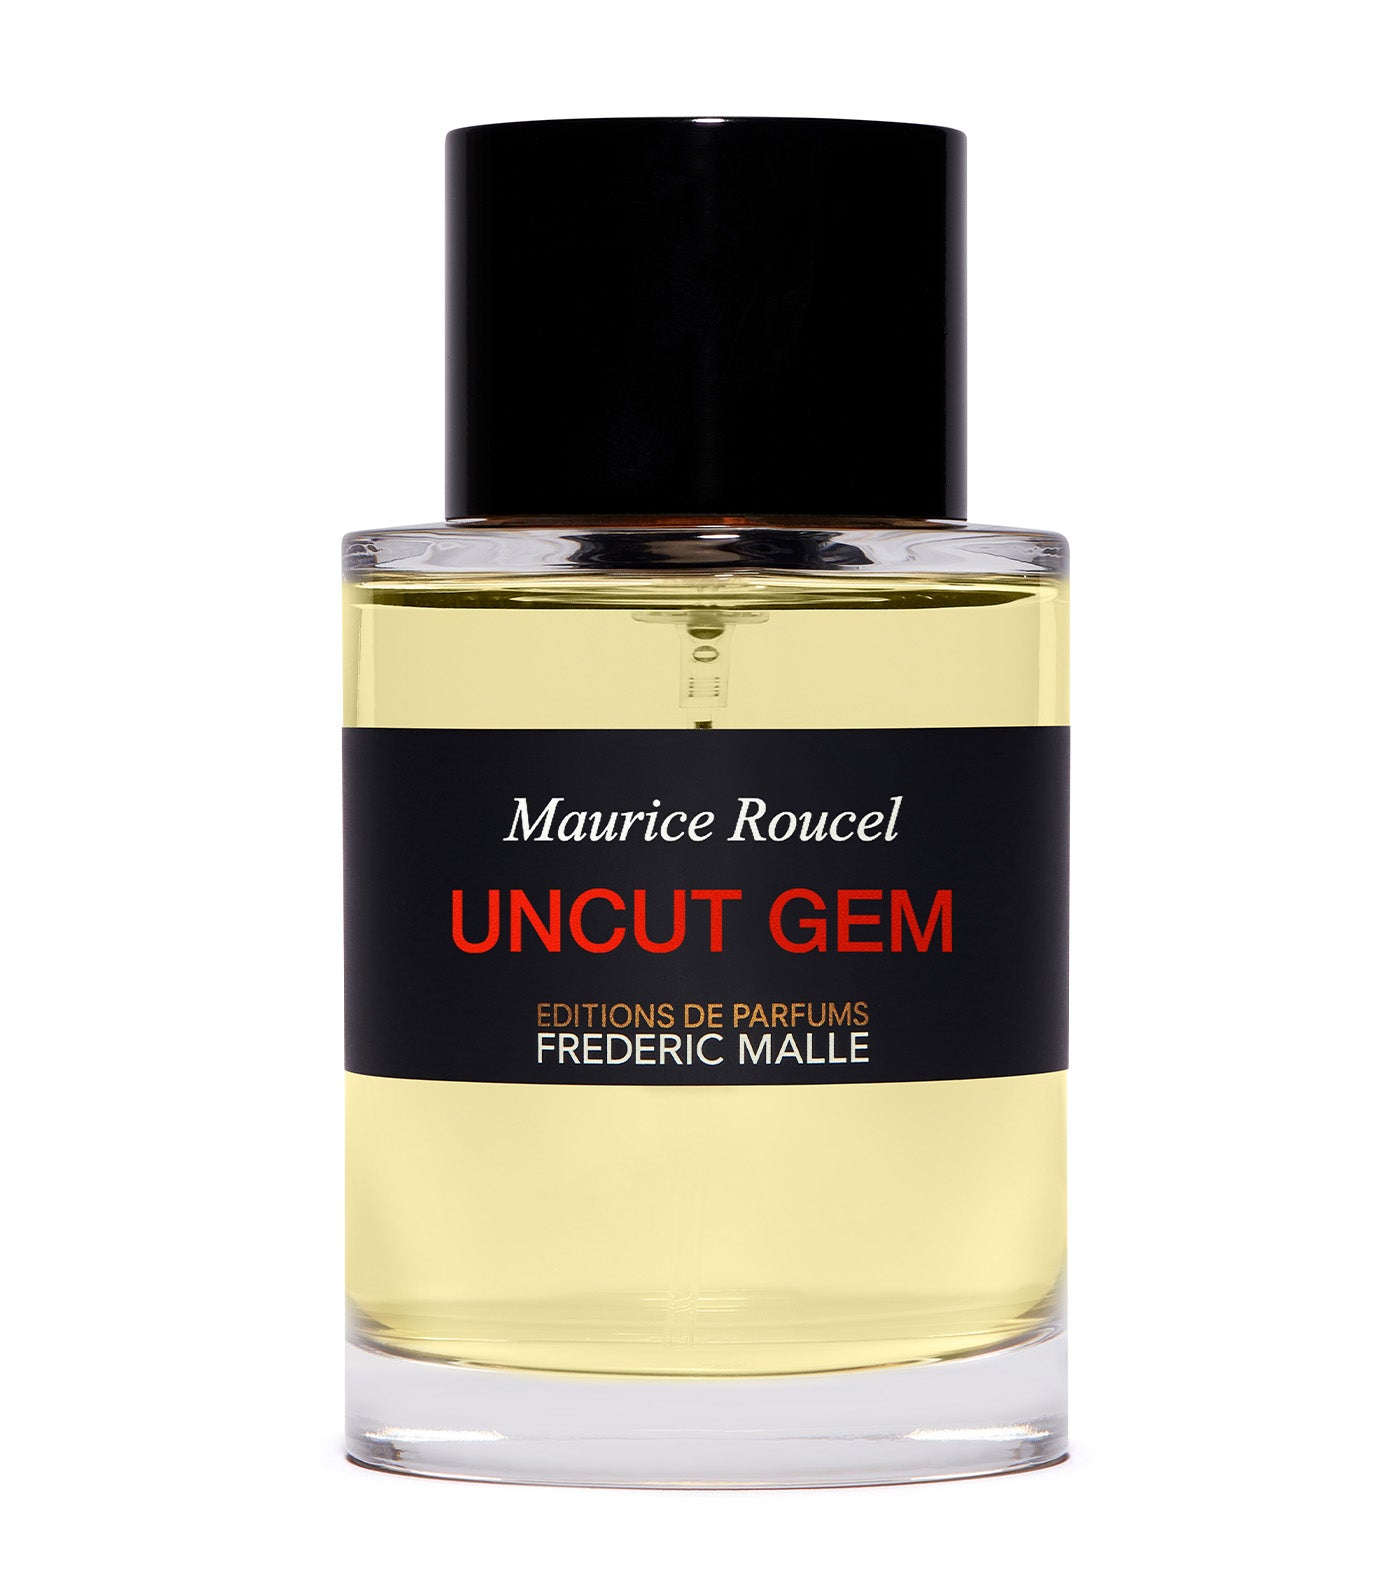 Uncut Gem by Maurice Roucel